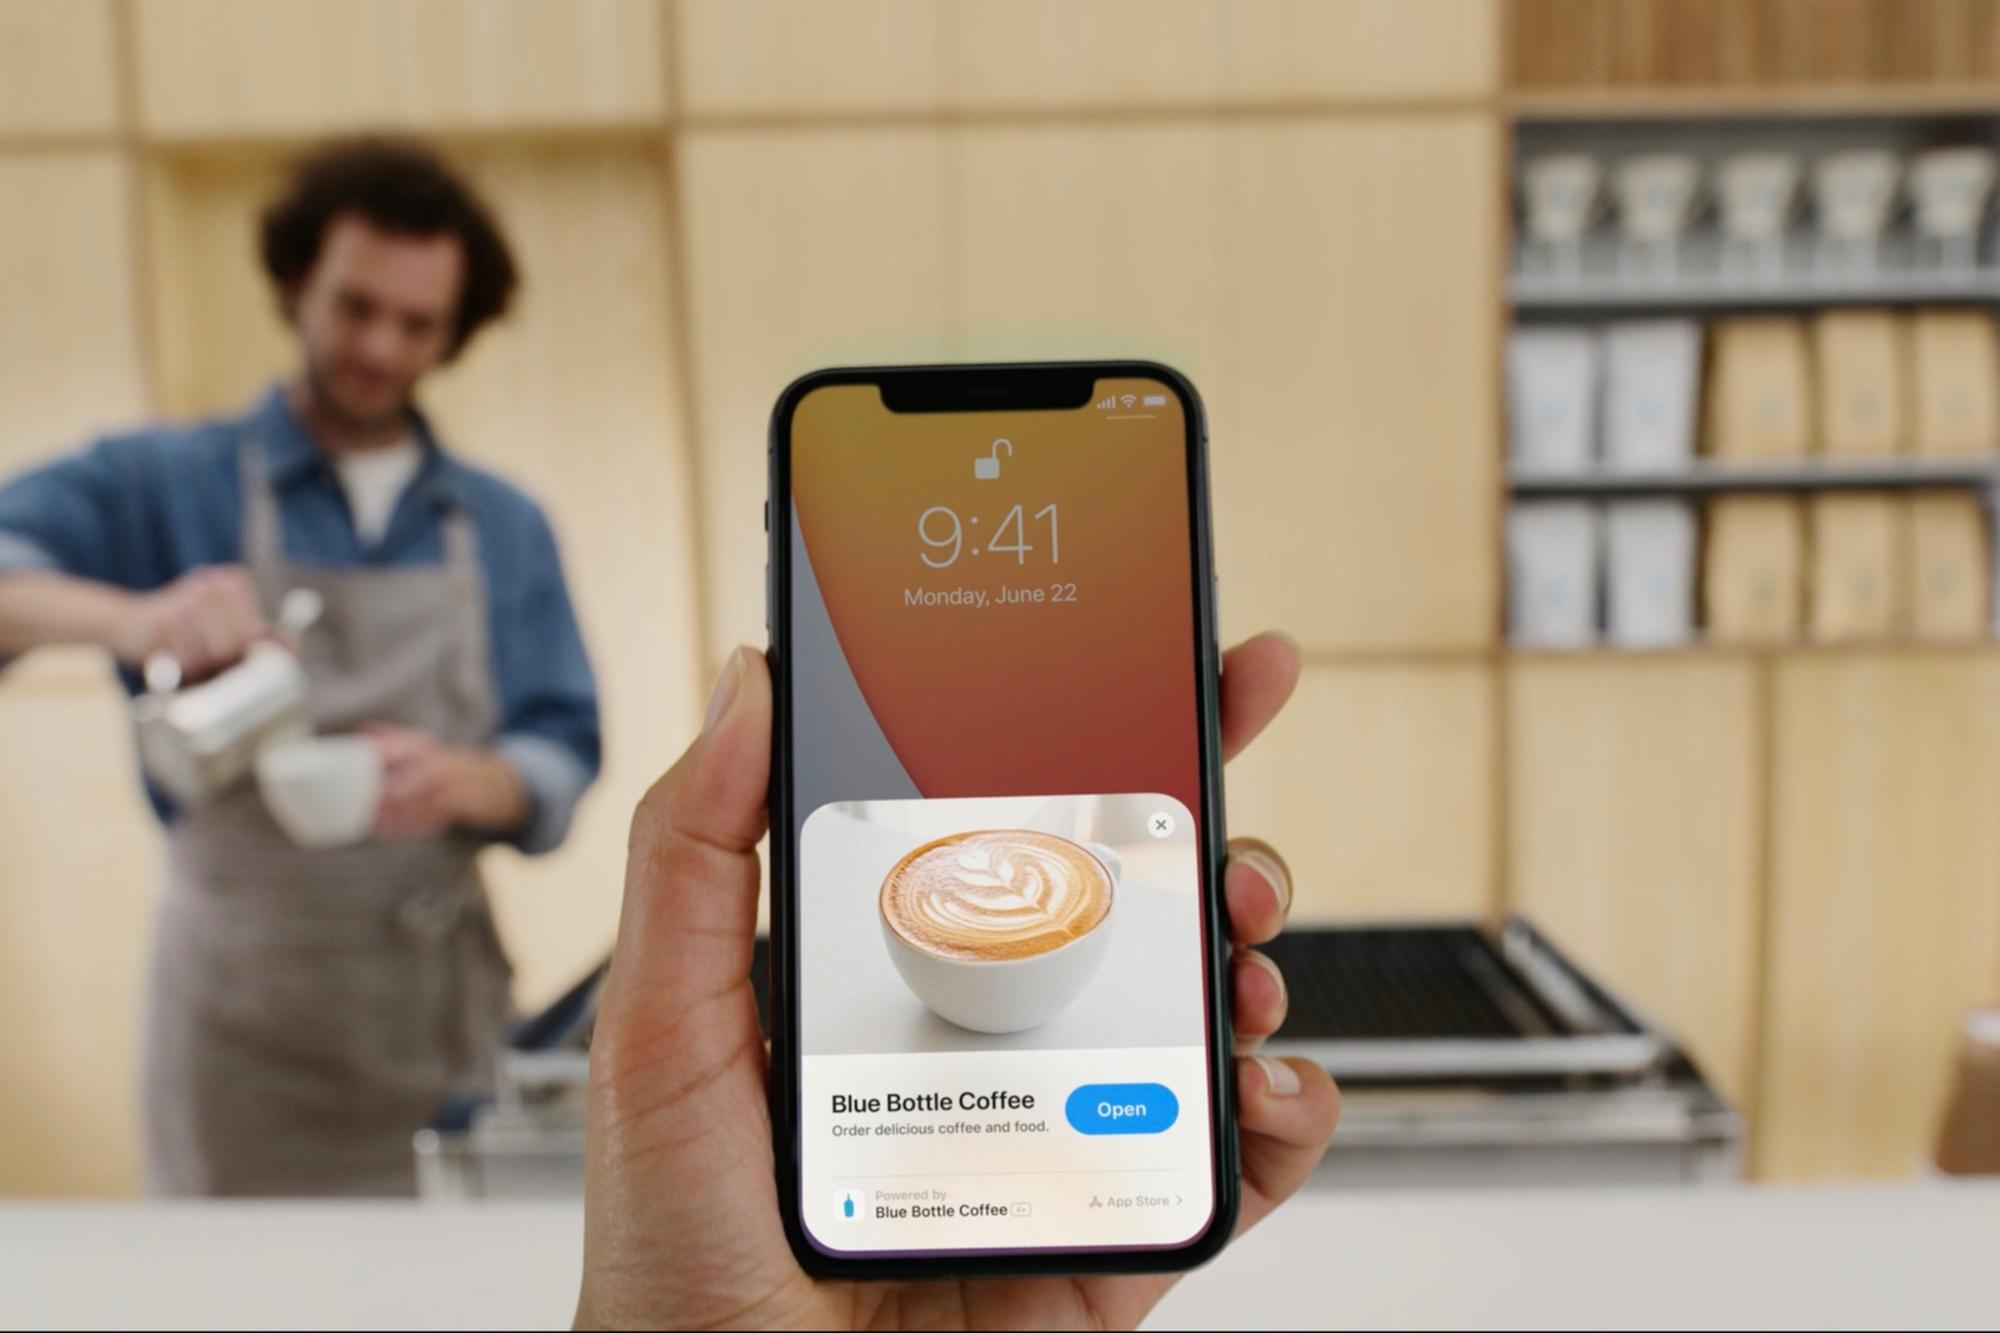 Een voorbeeld van een App Clip, om in een handomdraai een kop koffie af te rekenen.